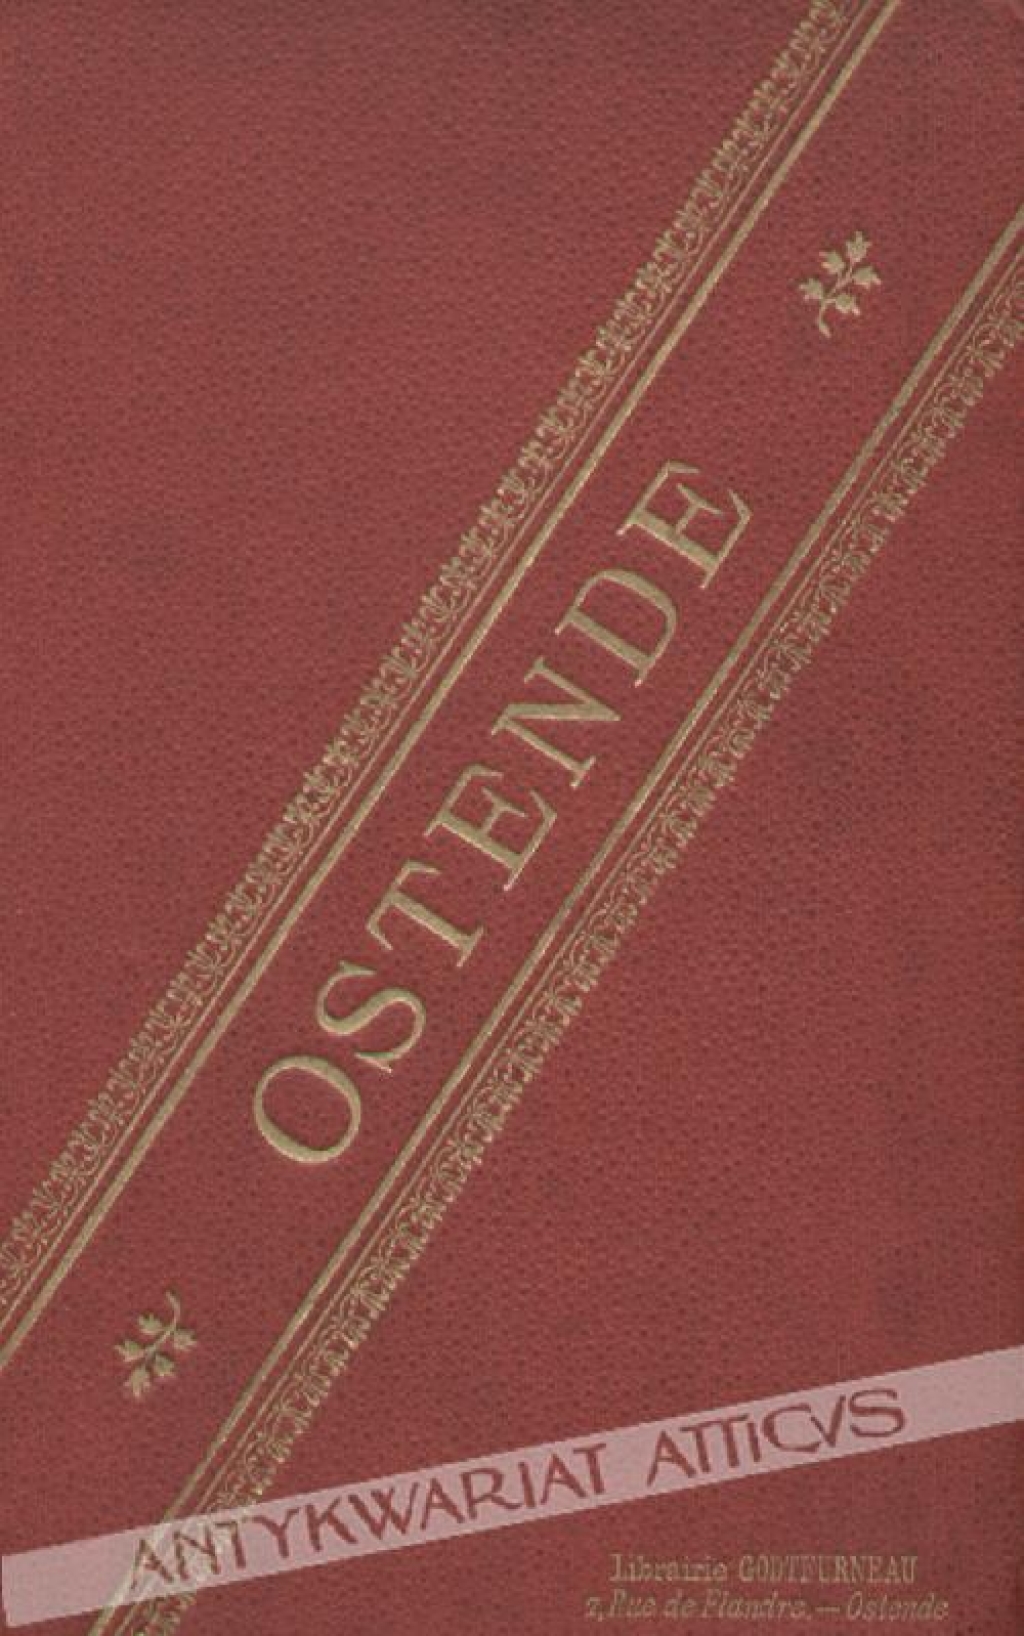 [album widoków, ok. 1900] Ostende